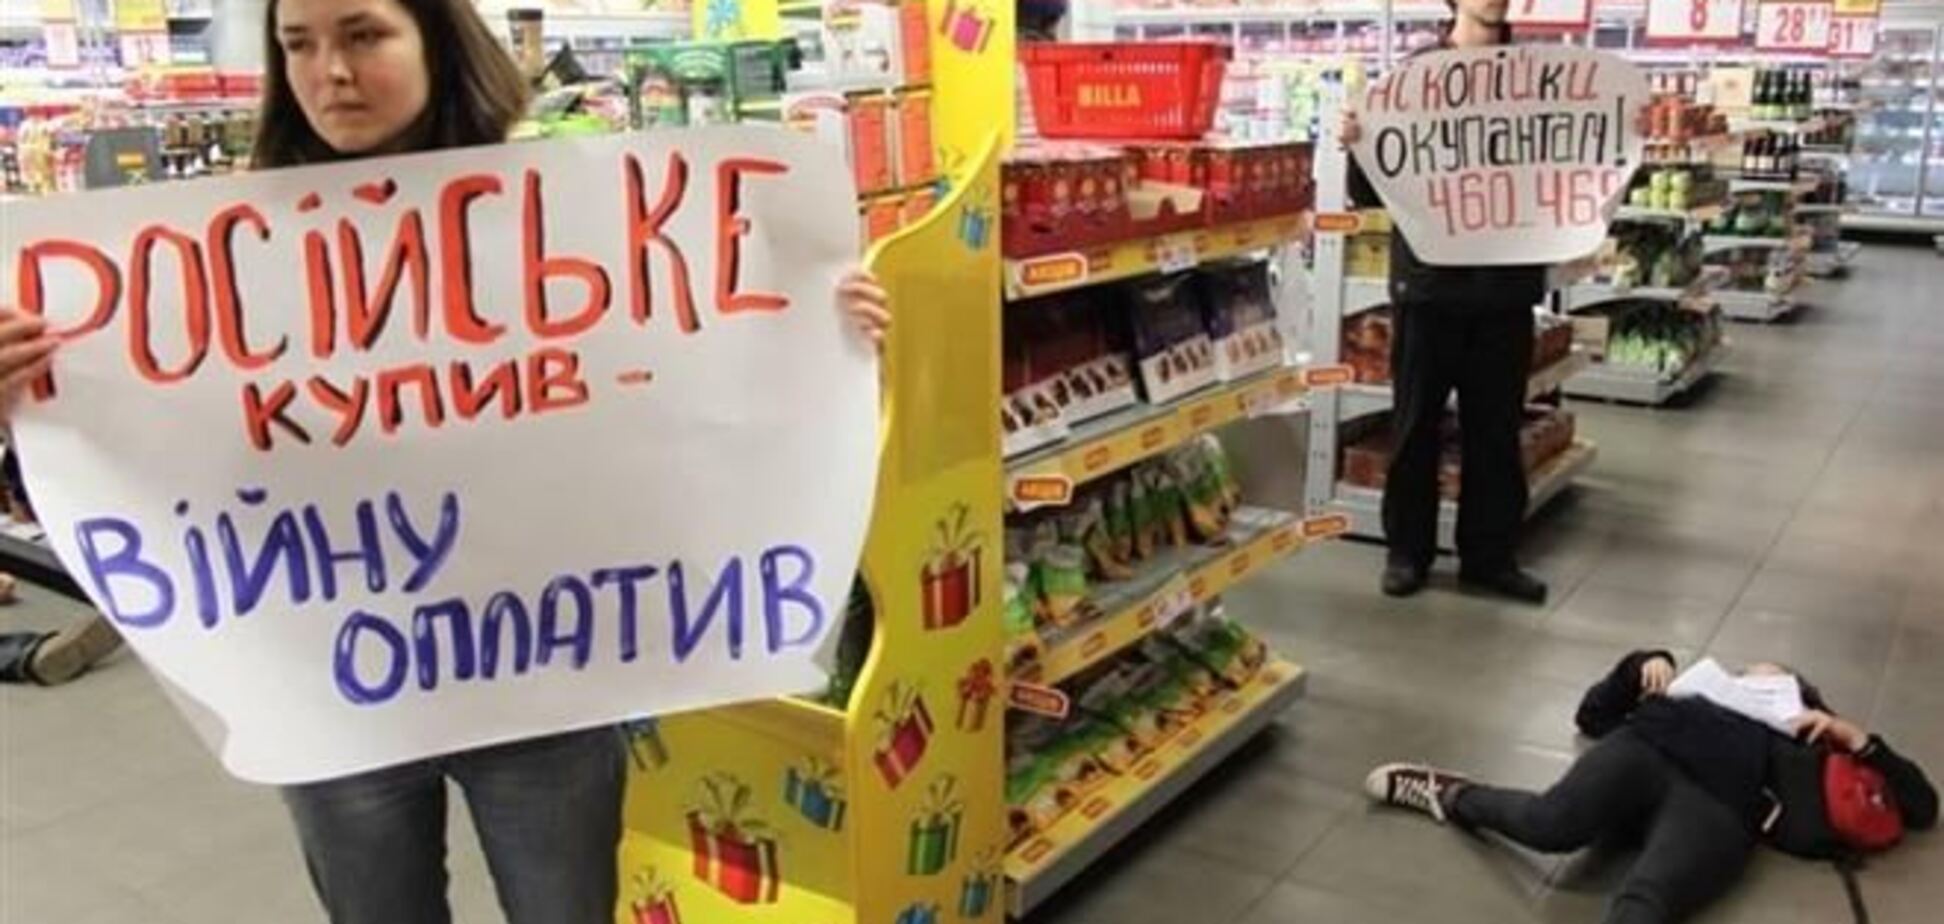 Украинцы массово бойкотируют российские товары, спрос упал на 40%